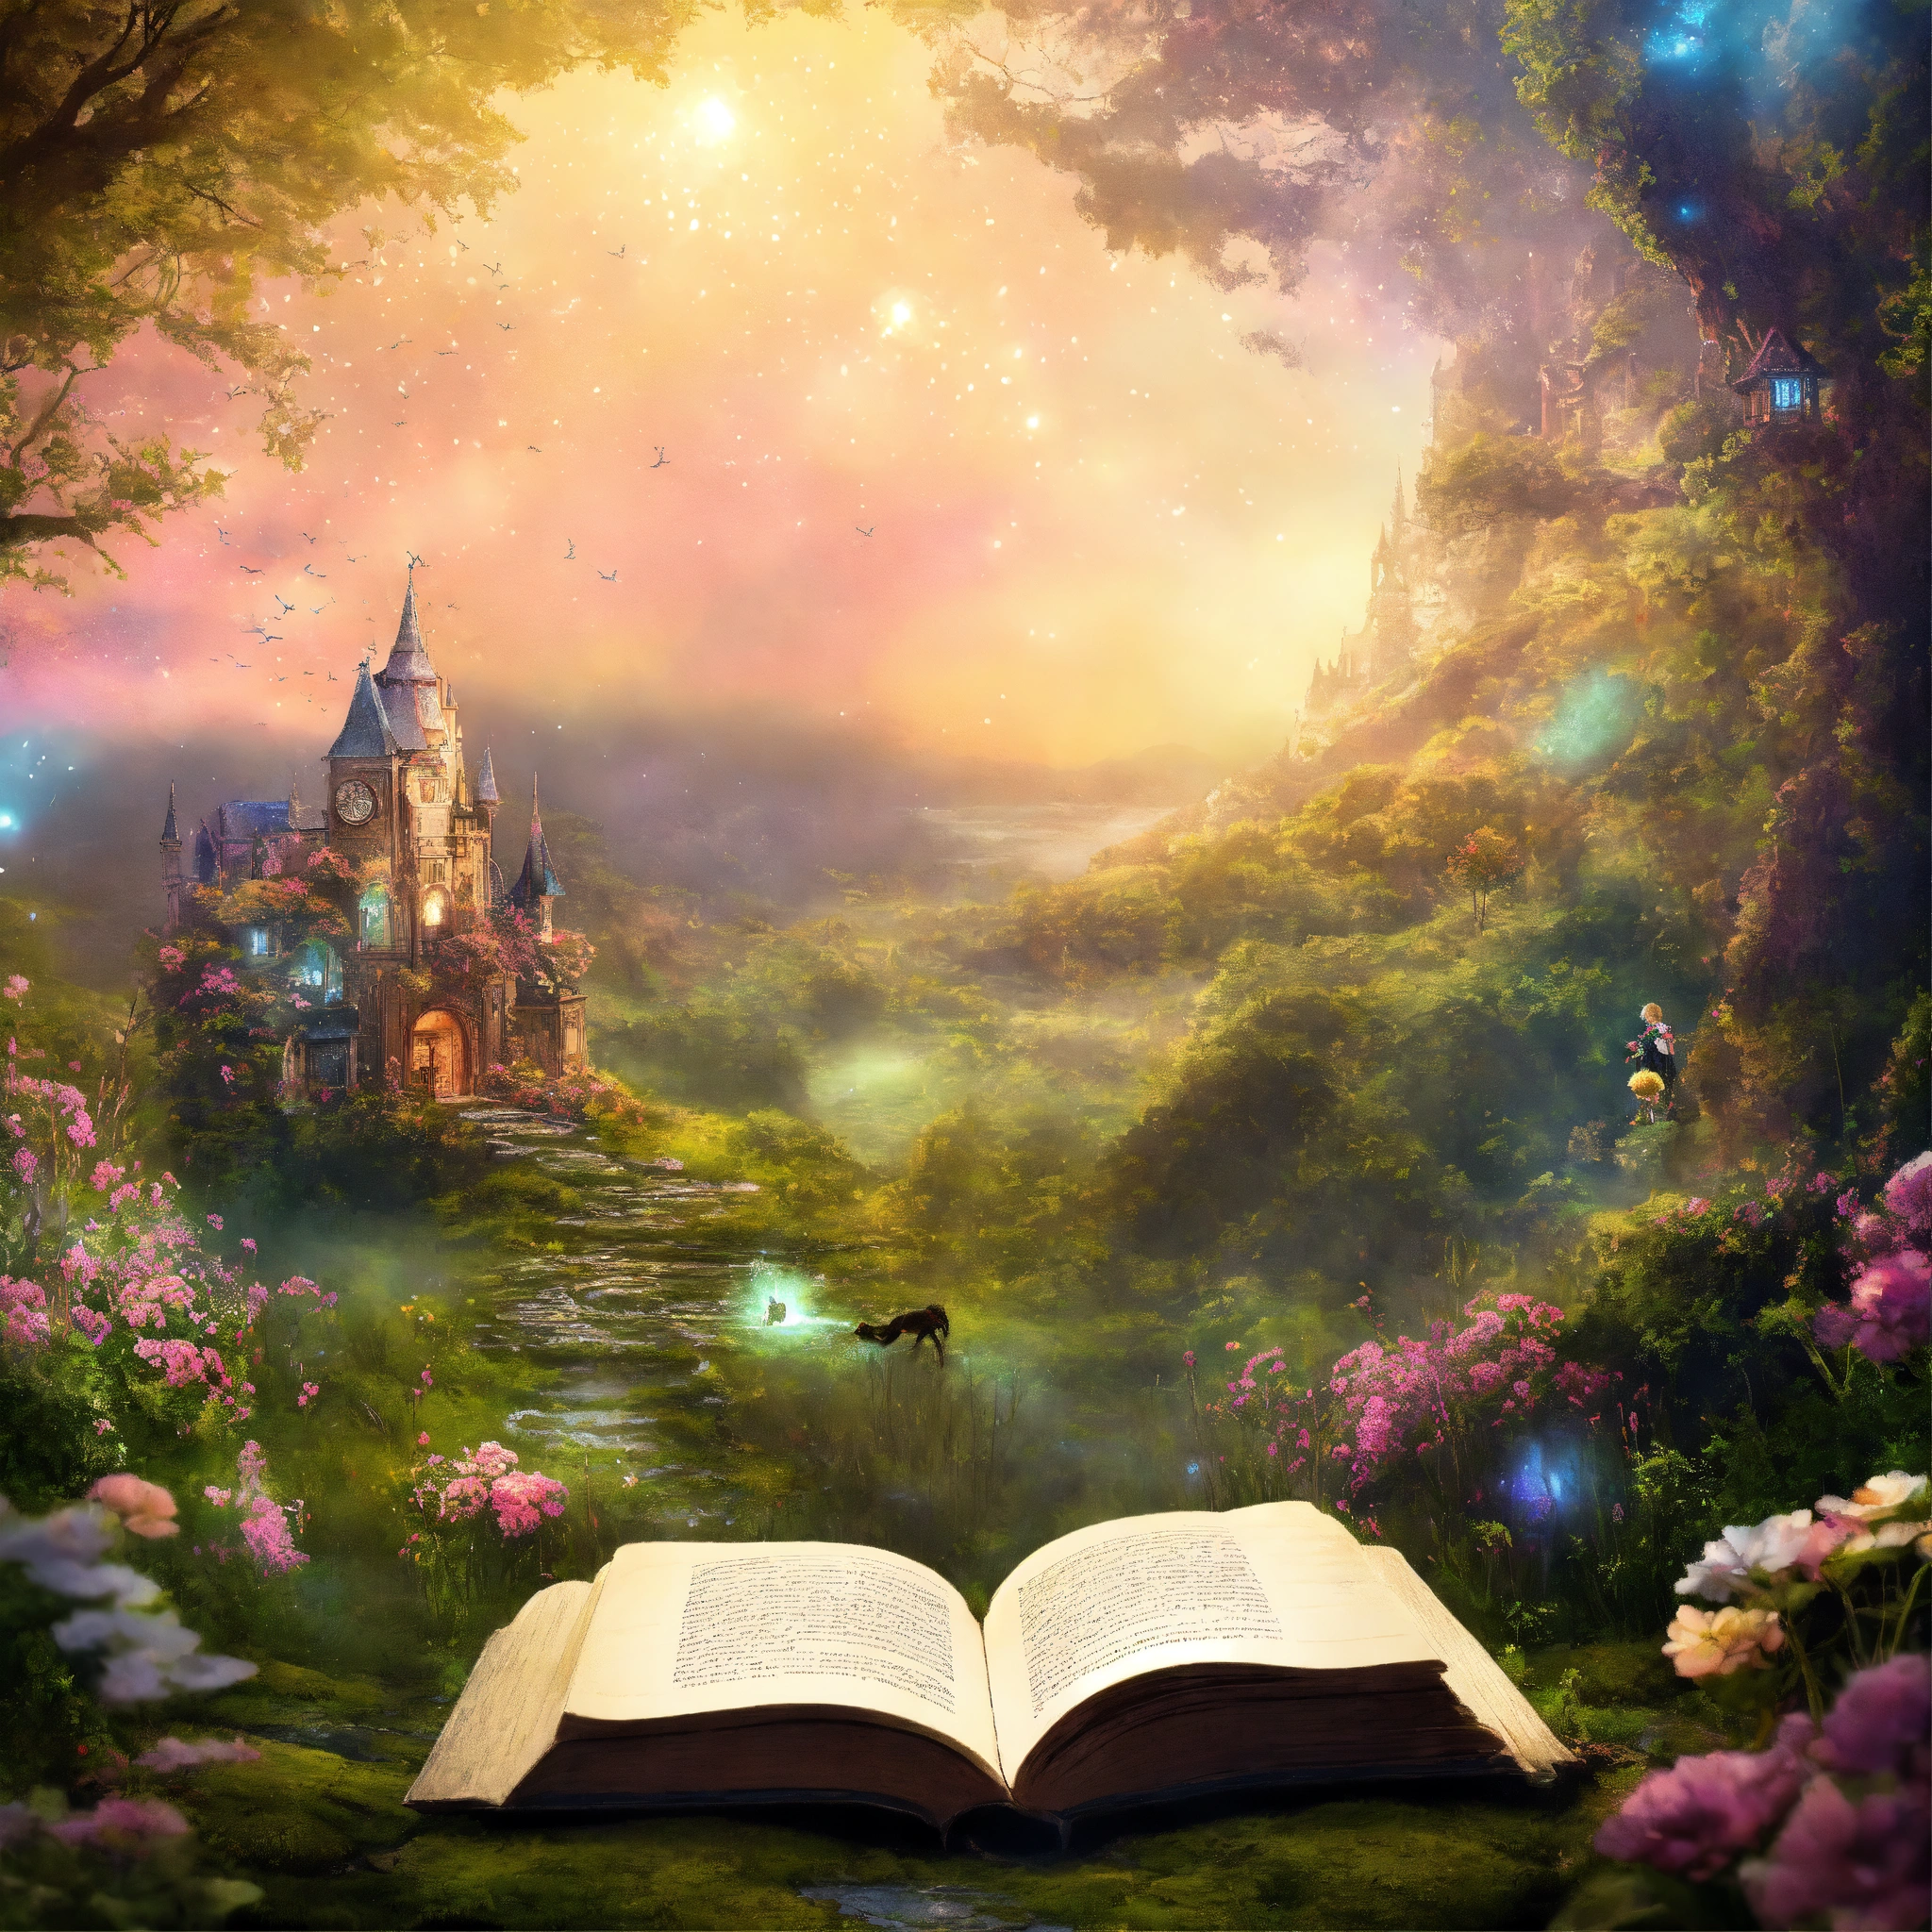 Волшебный мир из сказочной книги